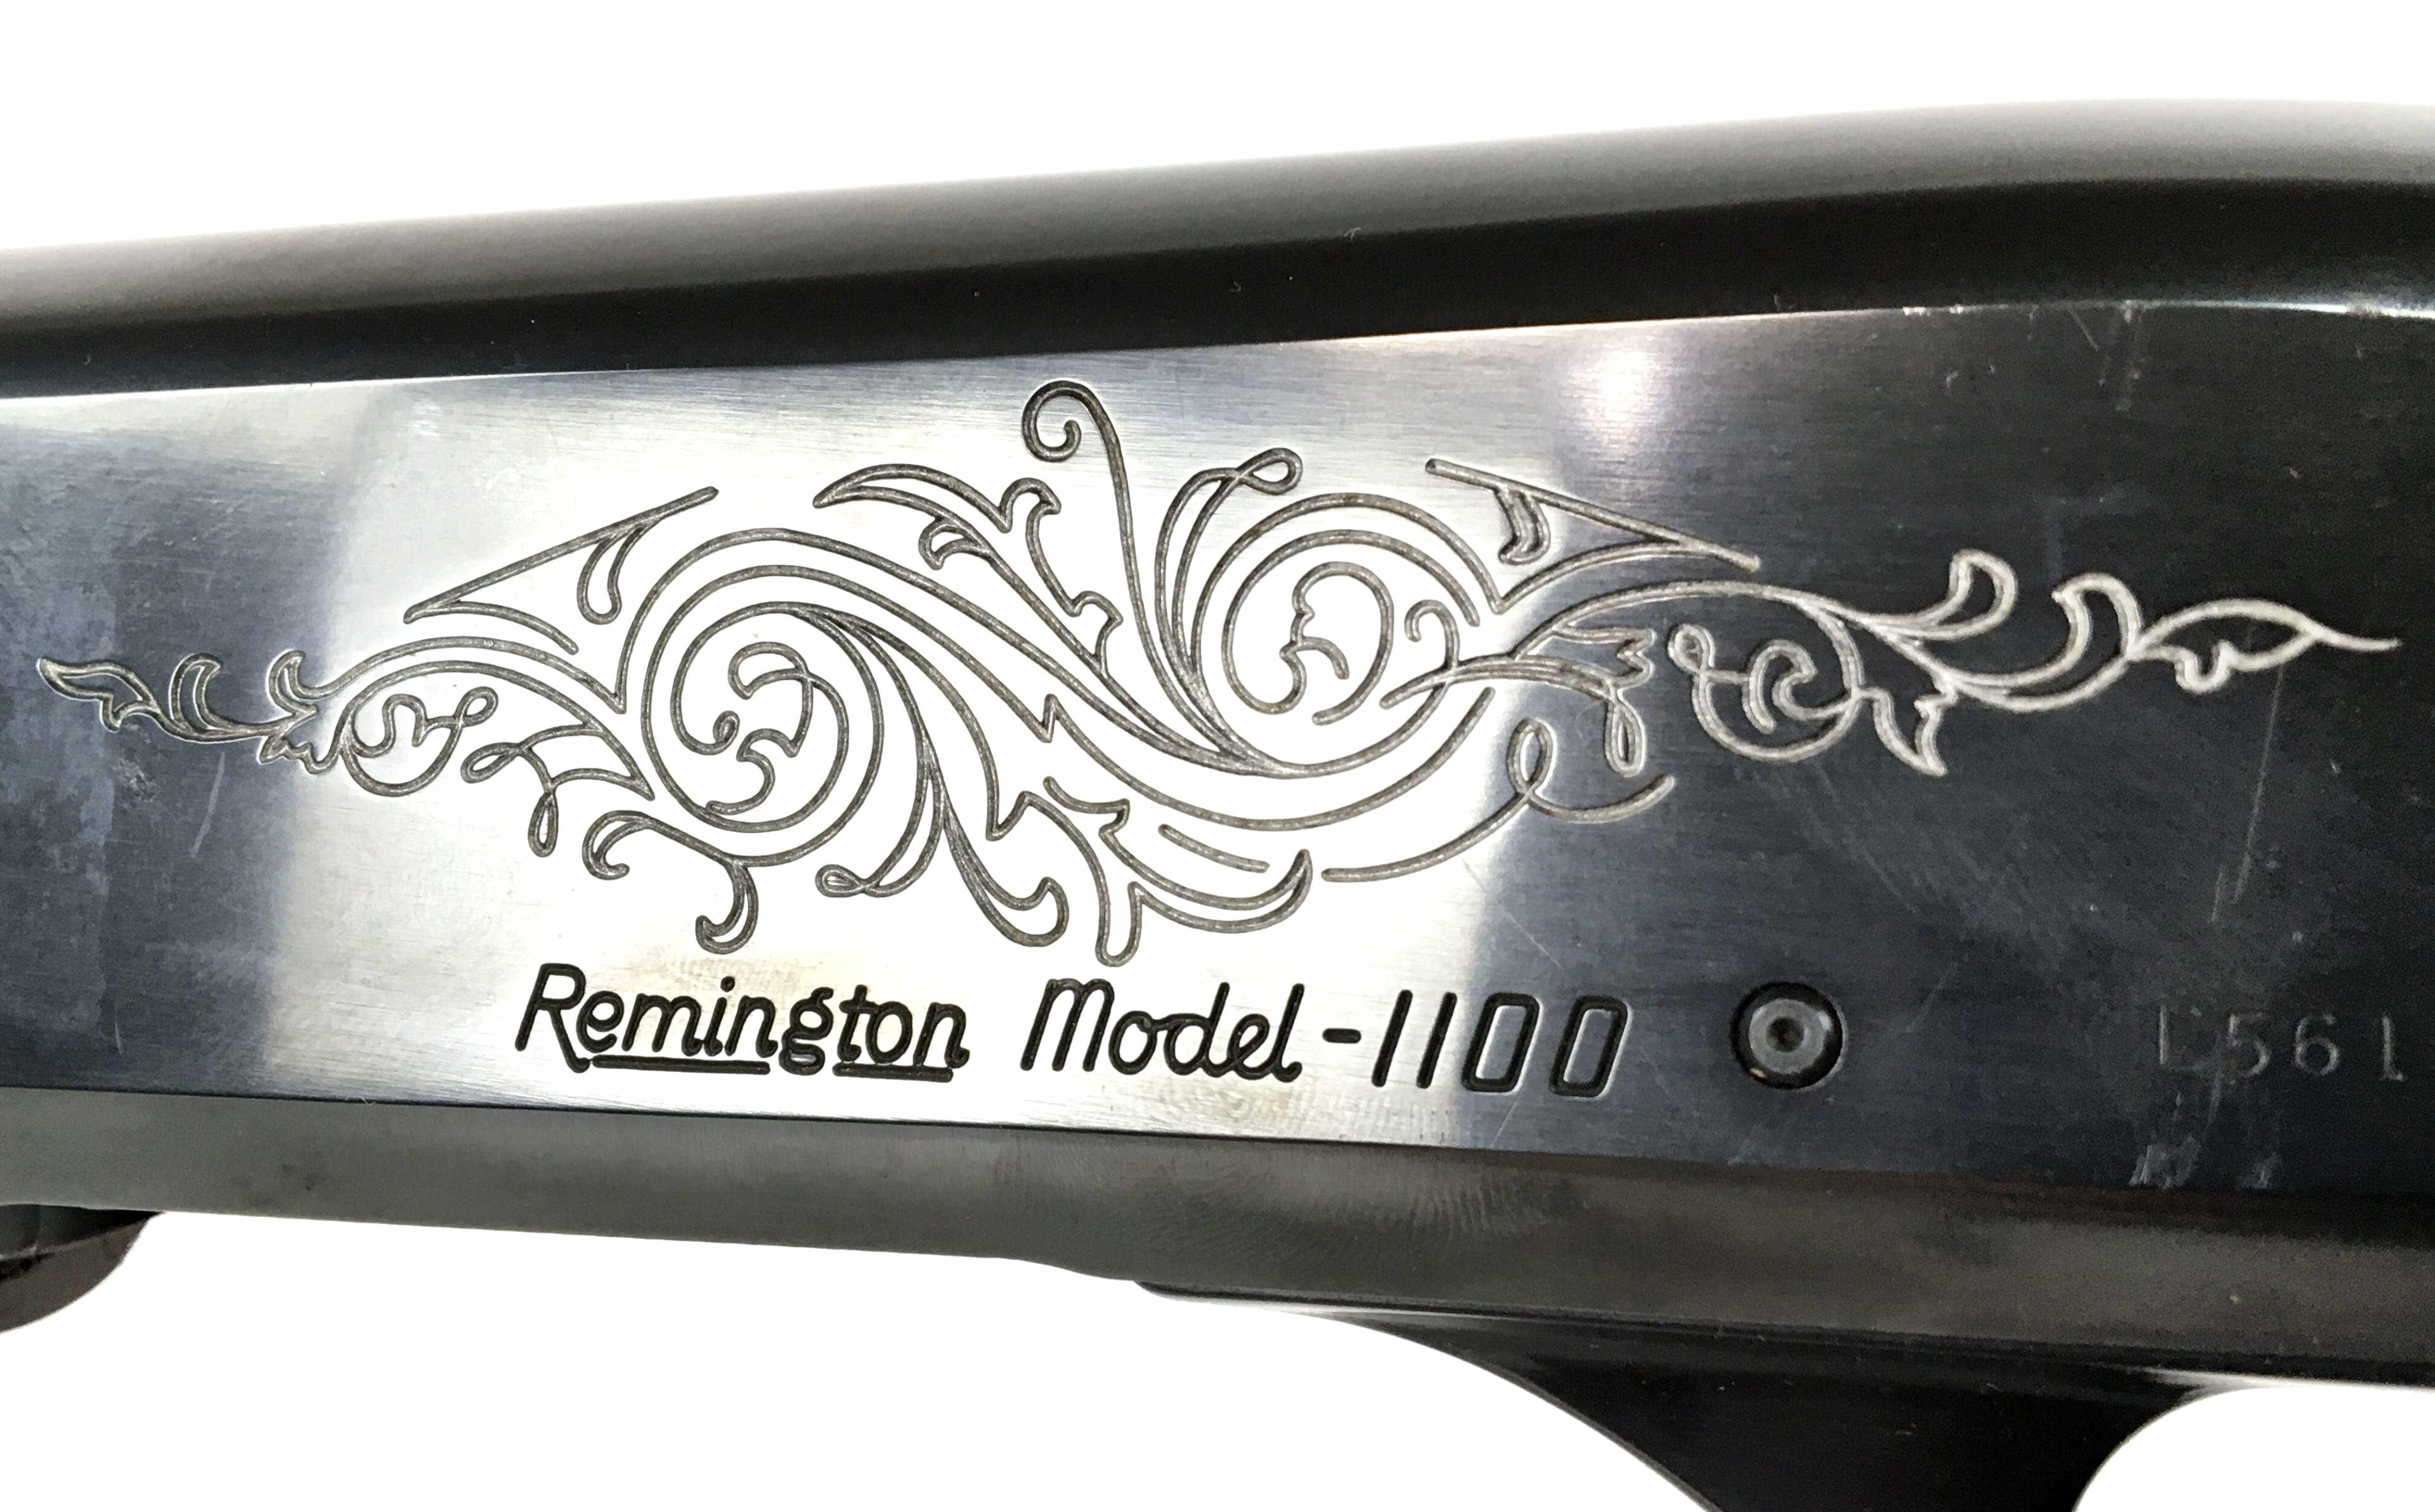 Remington Model 1100 12 Gauge Shotgun